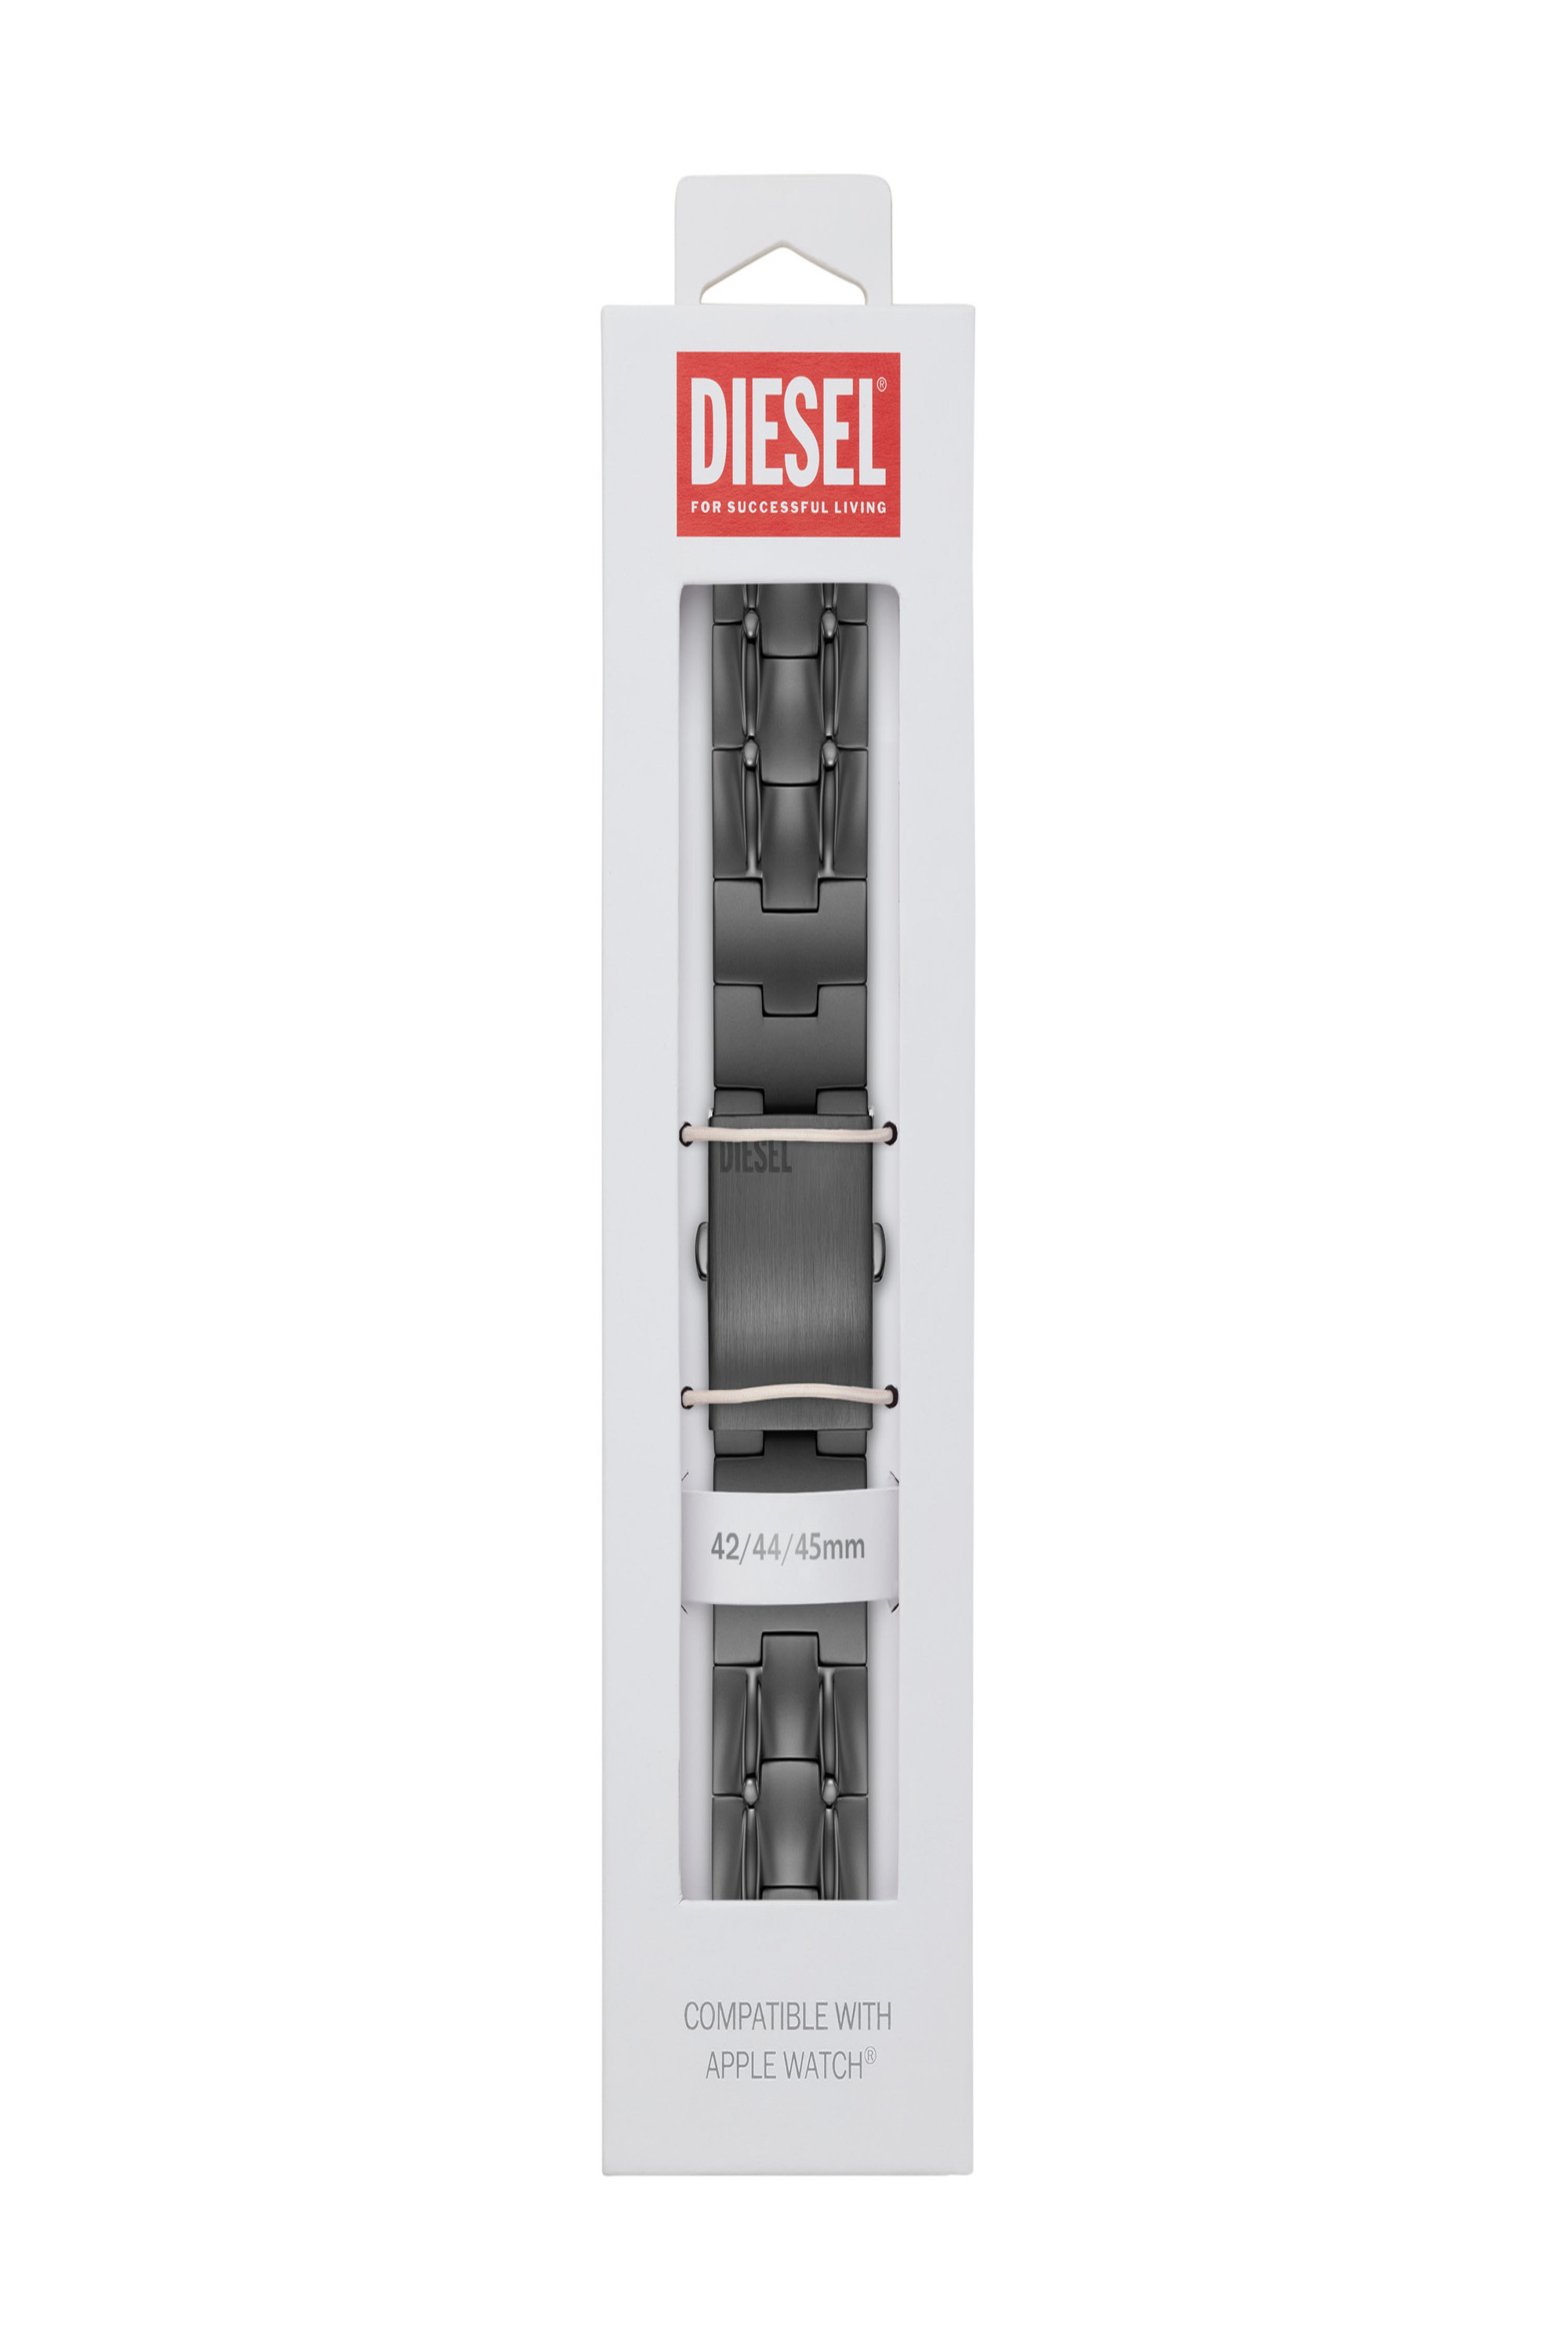 Diesel - DSS0015, Grigio - Image 2